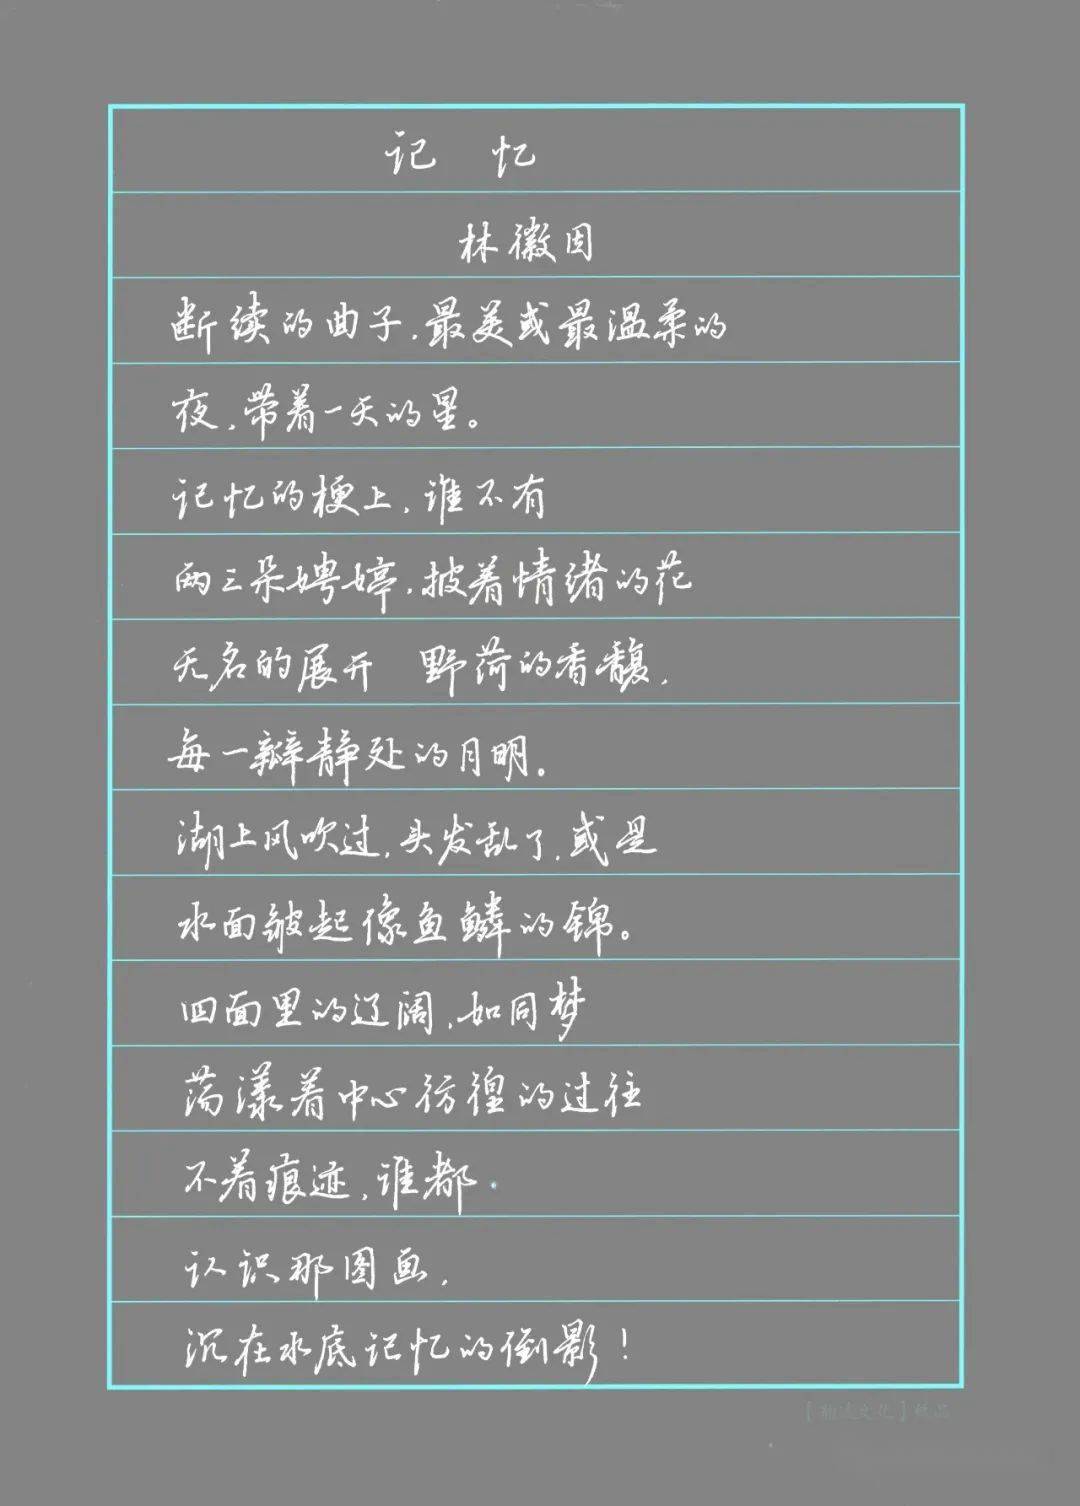 林徽因的诗短诗图片